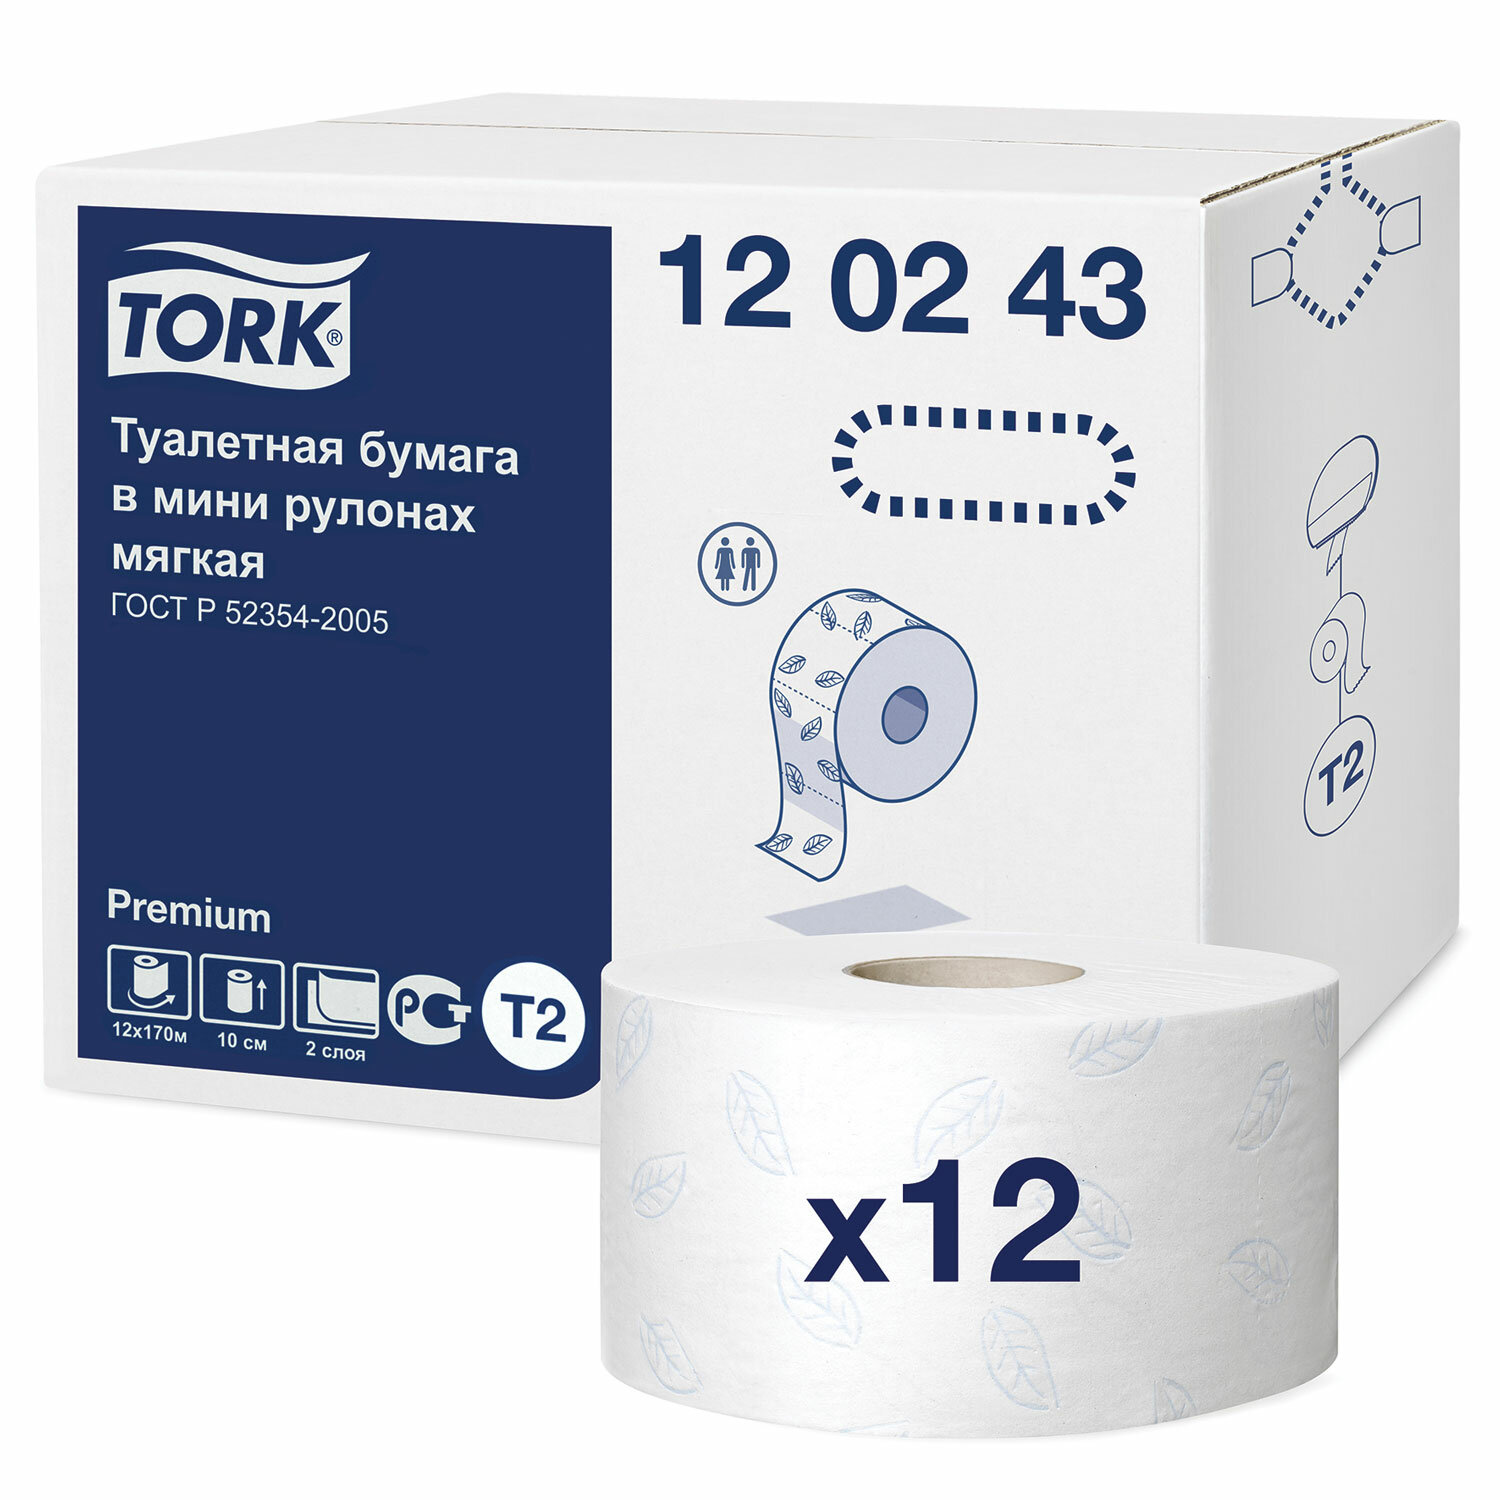 TORK  TORK 120243